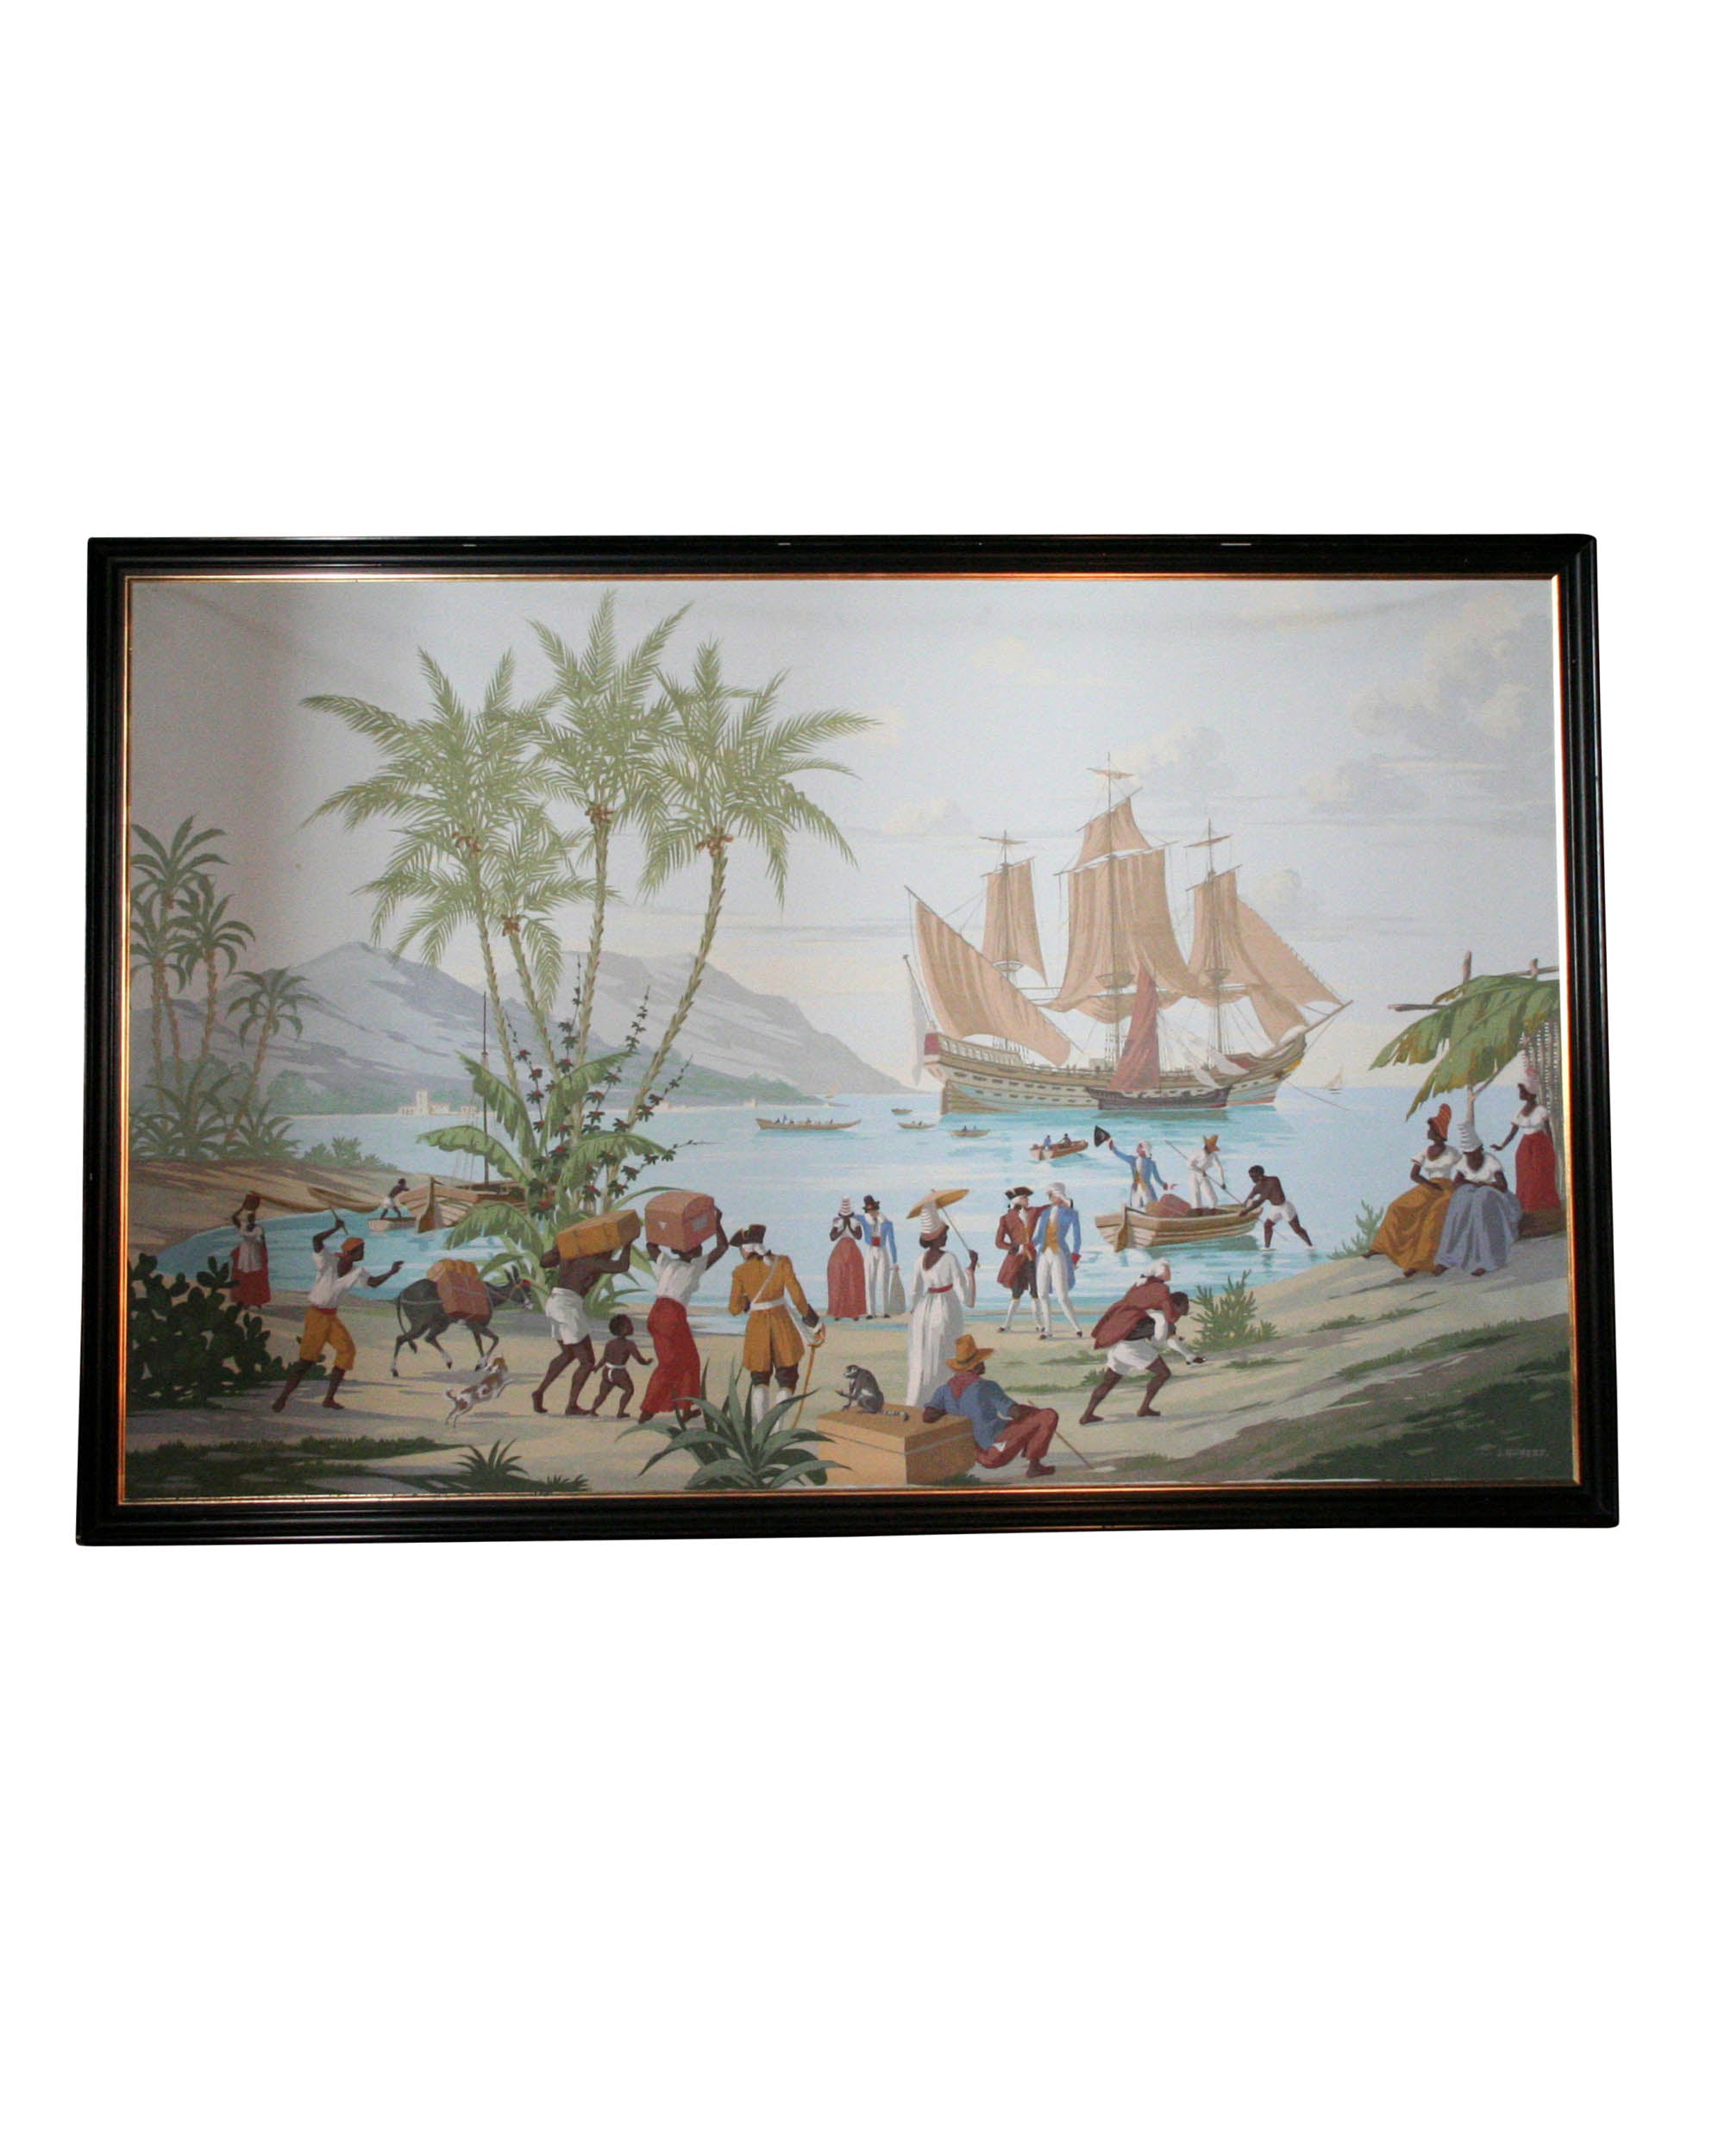 Lienzo pintado al óleo representando una escena comercial en las Indias Occidentales. Siglo XX. S. Hubert